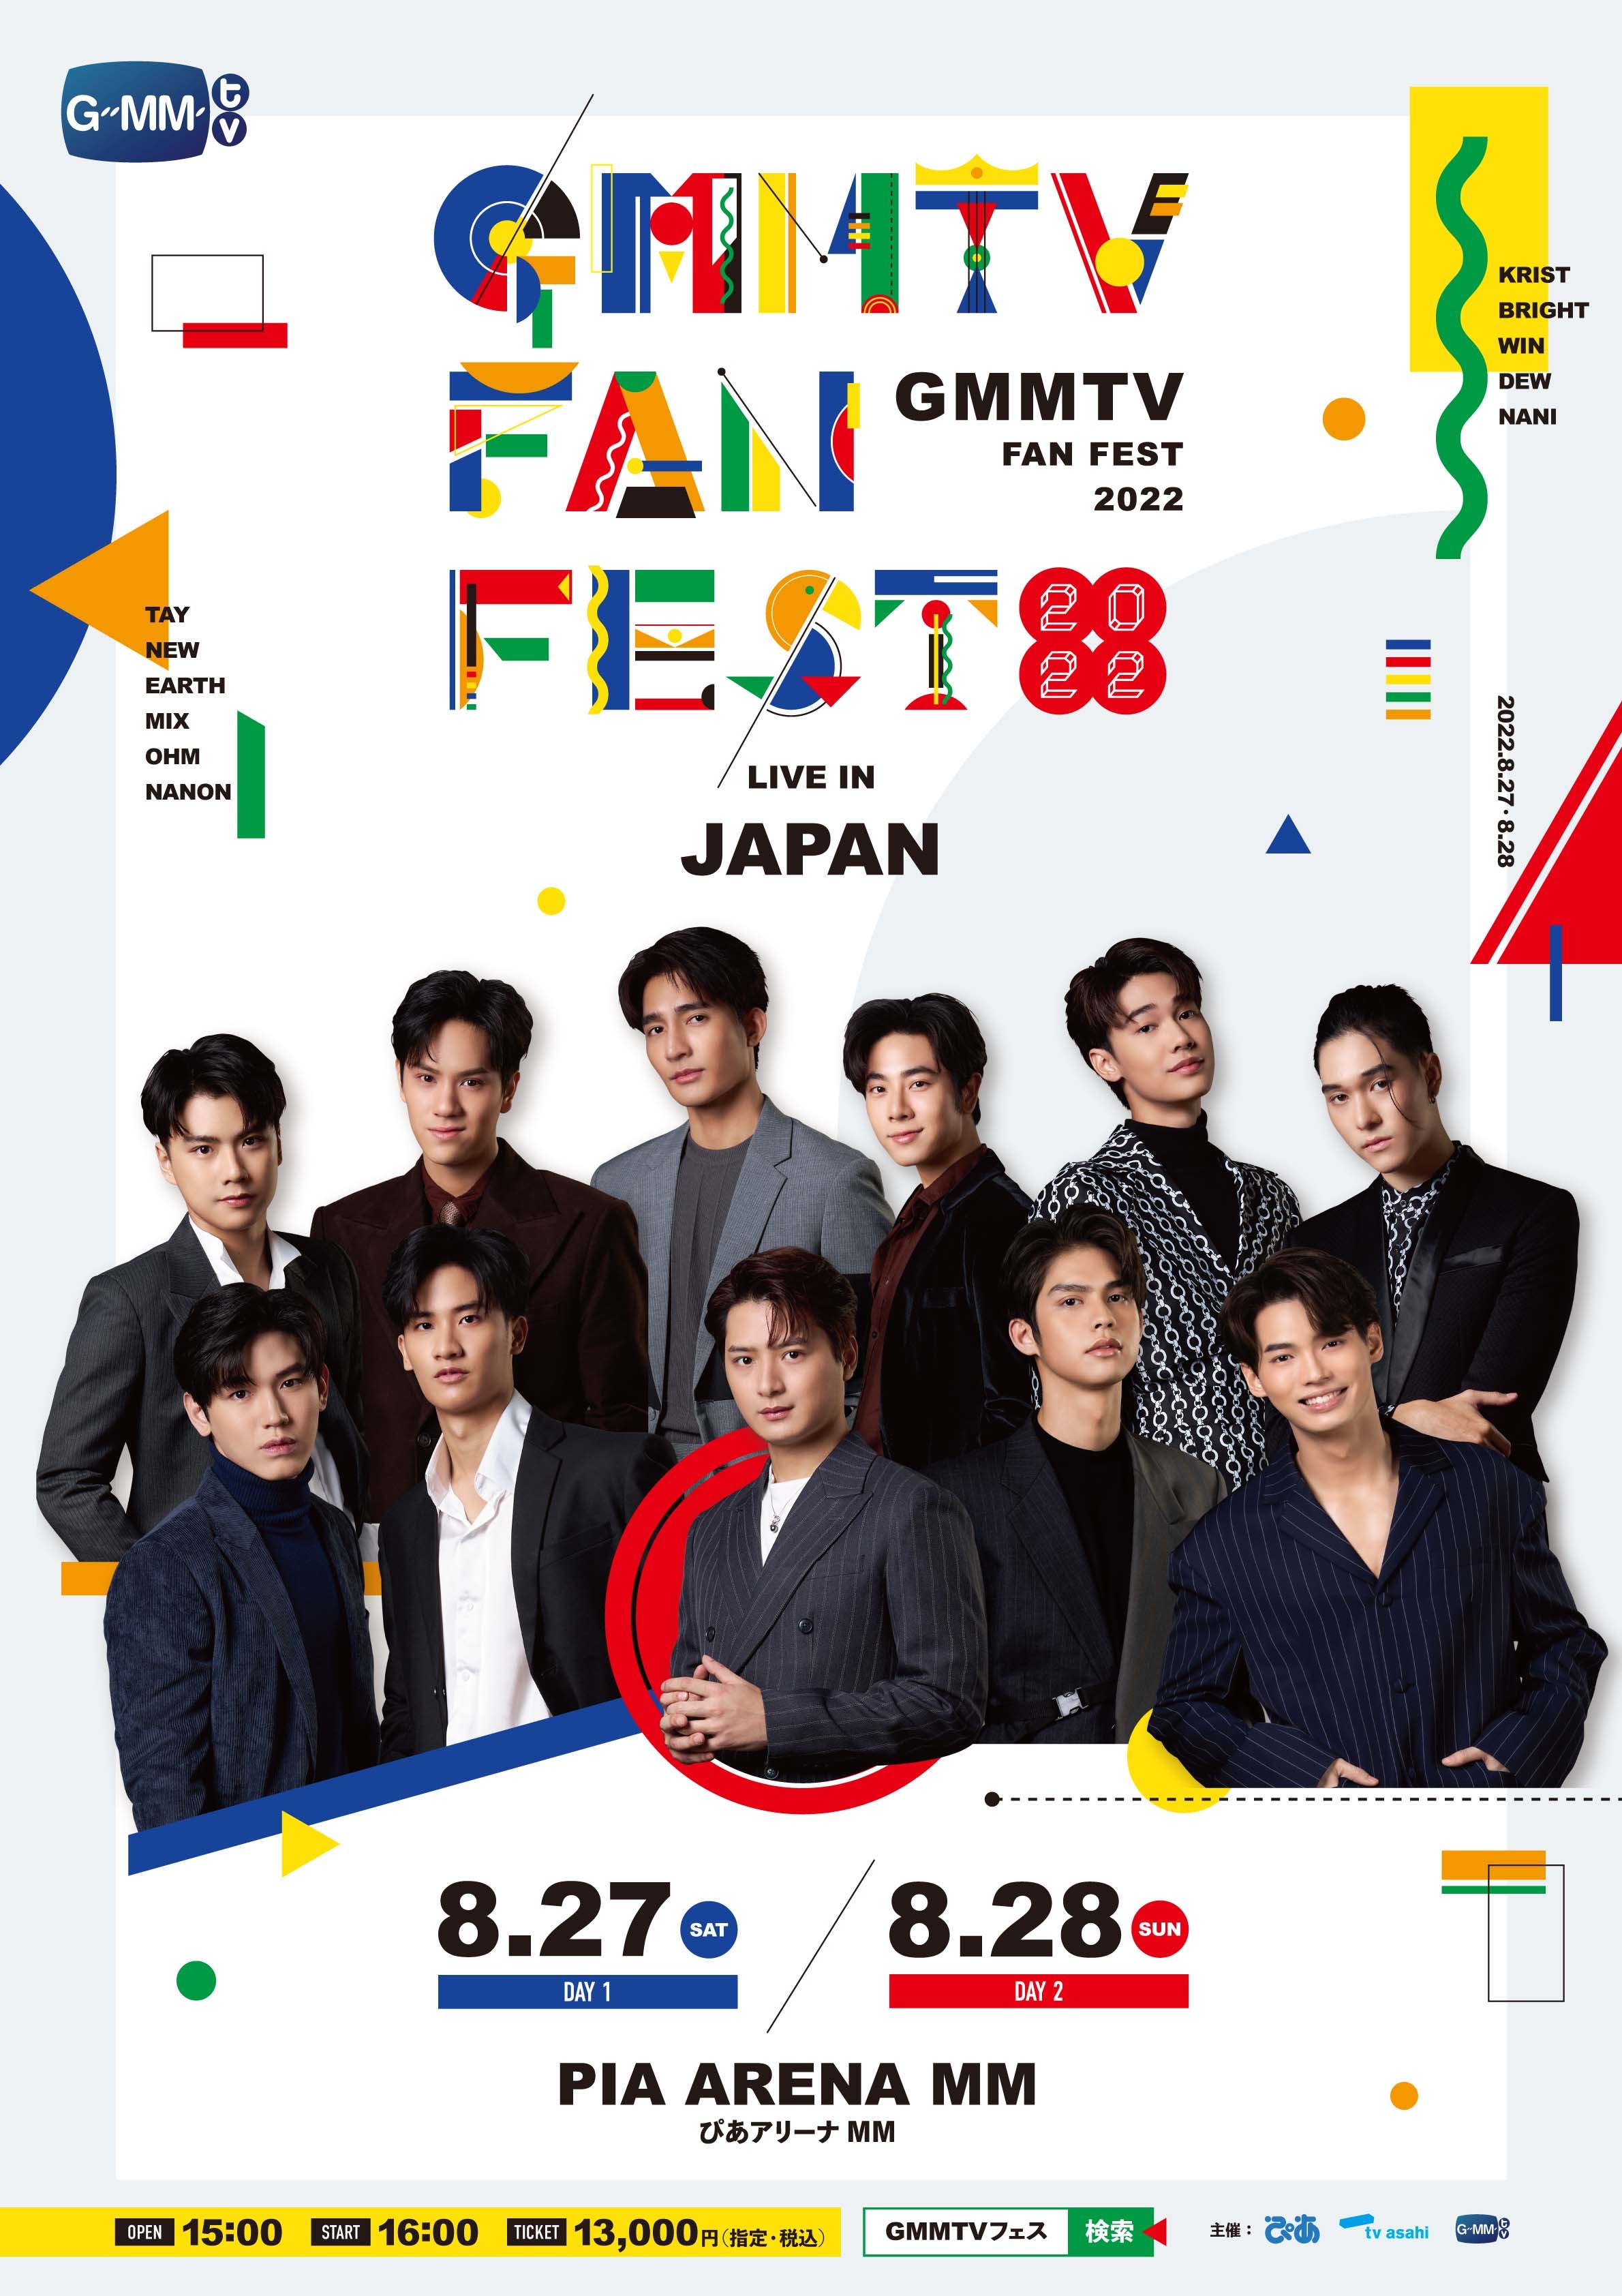 『GMMTV FAN FEST 2022 LIVE IN JAPAN』